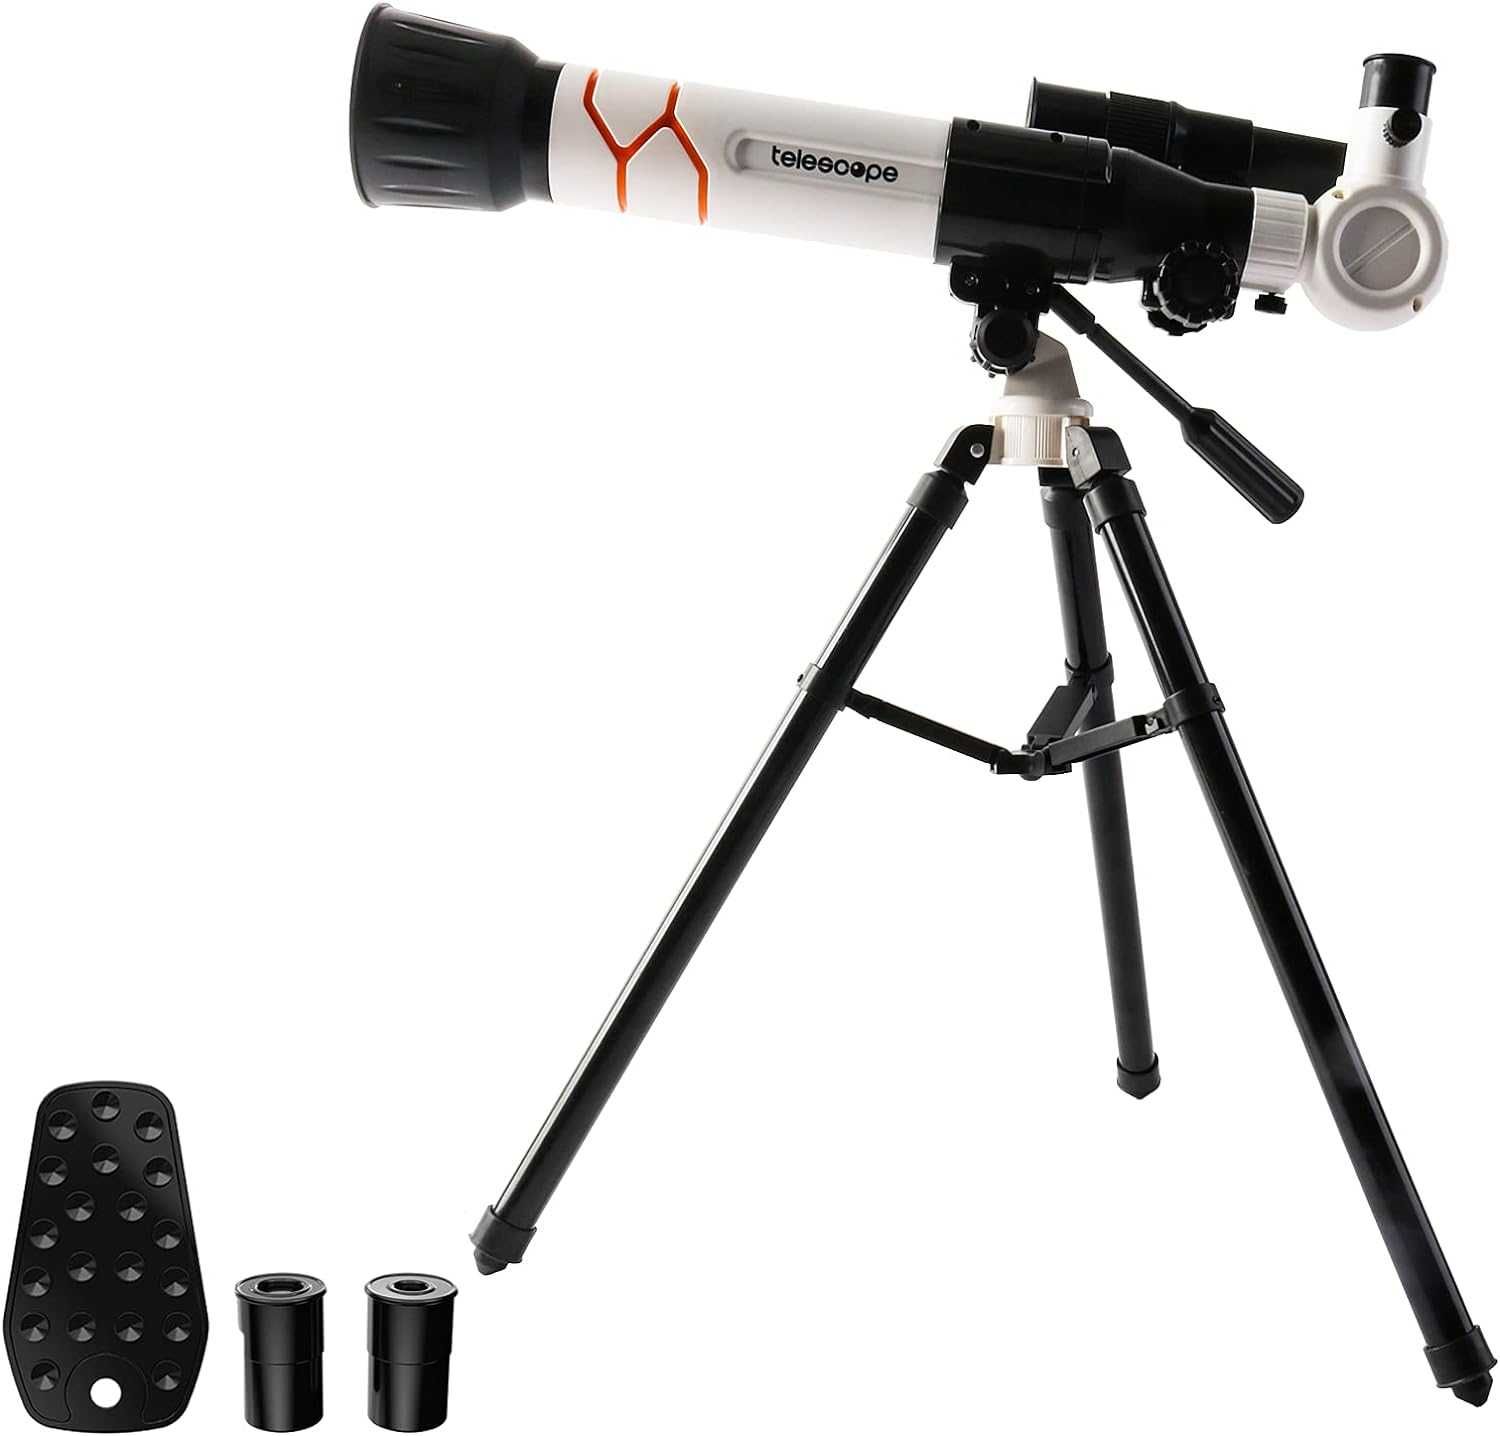 Zabawka Zestaw naukowy dla dzieci  teleskop + mikroskop + statyw